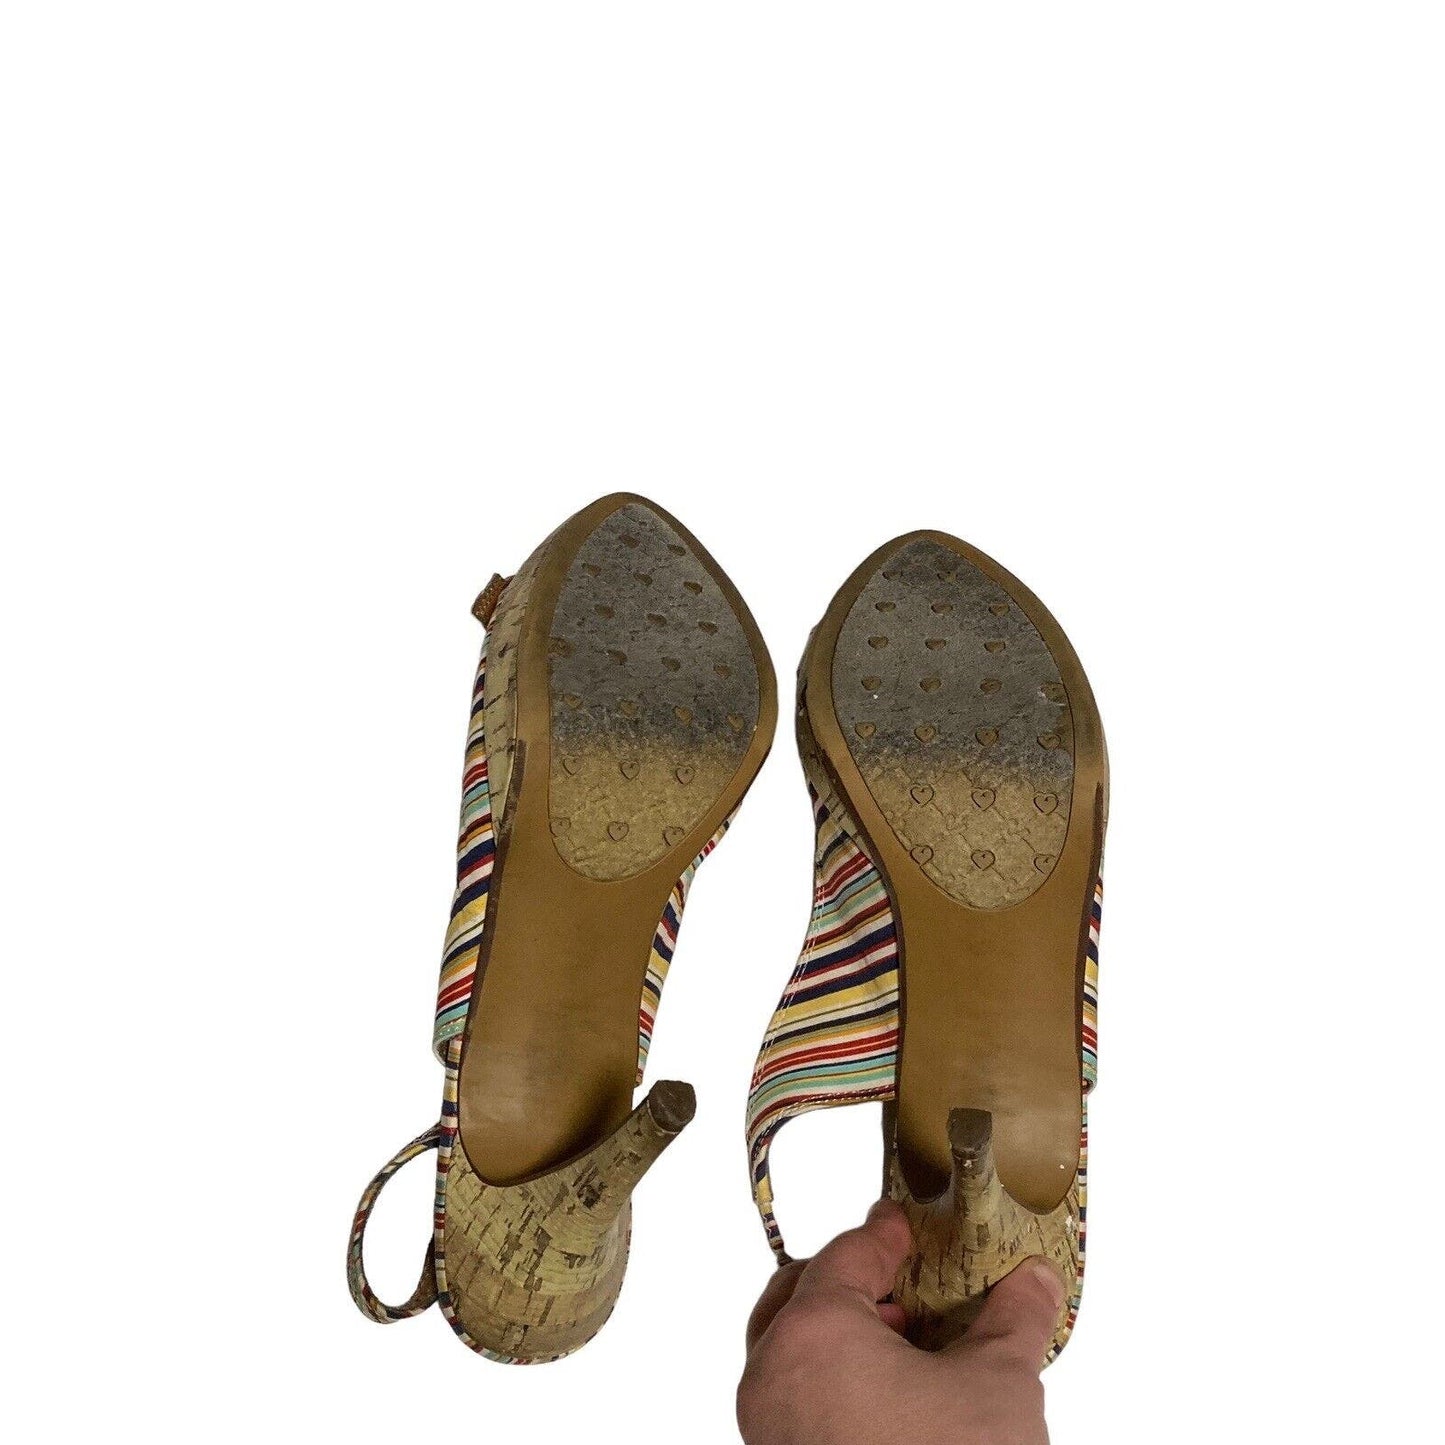 Candie's Kennady Stripe, 10 M, Sling Back, Peep Toe, Cork Platform, Heels, Shoes